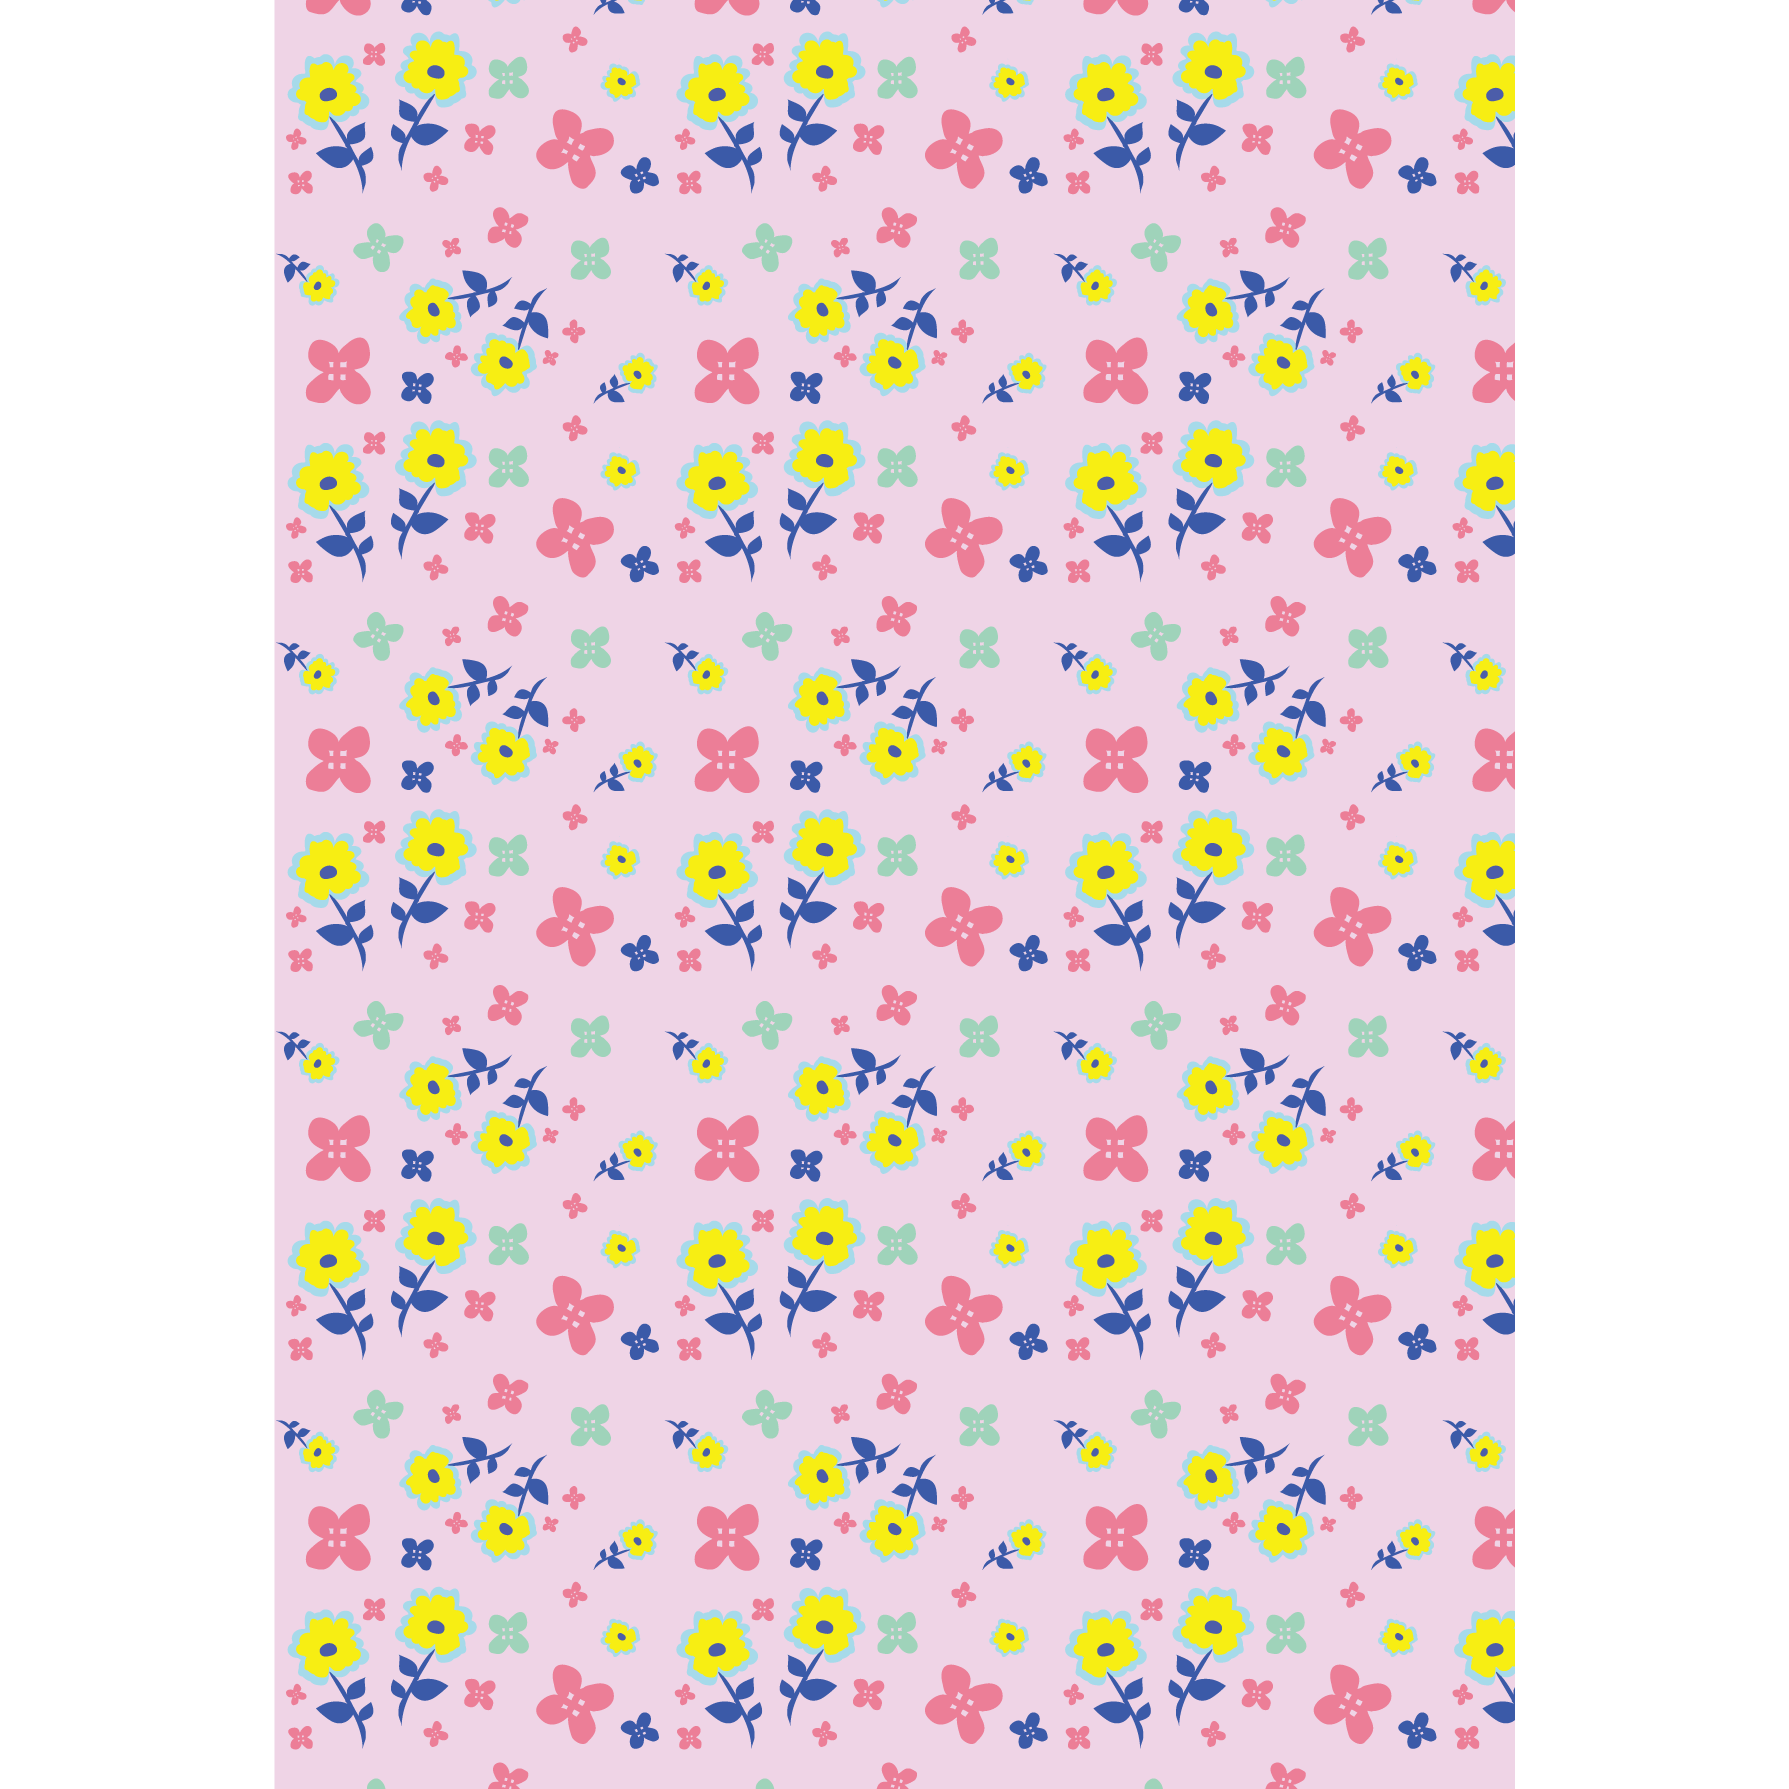 かわいい 背景 素材 花柄 ピンクベース イラスト 商用フリー 無料